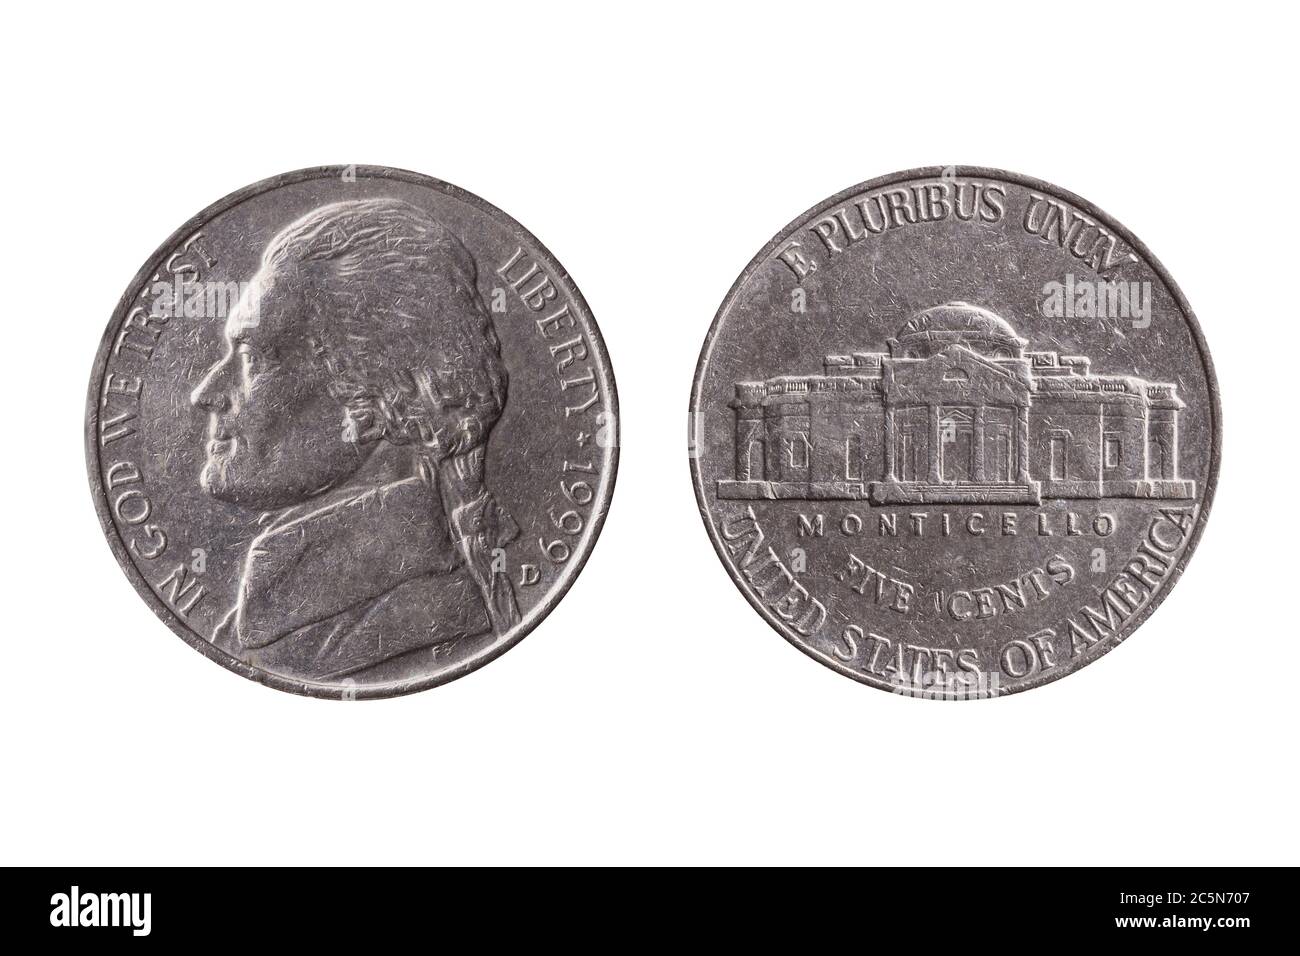 Moneta di nichel a metà moneta USA (25 centesimi) con un ritratto di Thomas Jefferson e Montecello tagliato e isolato su uno sfondo bianco Foto Stock